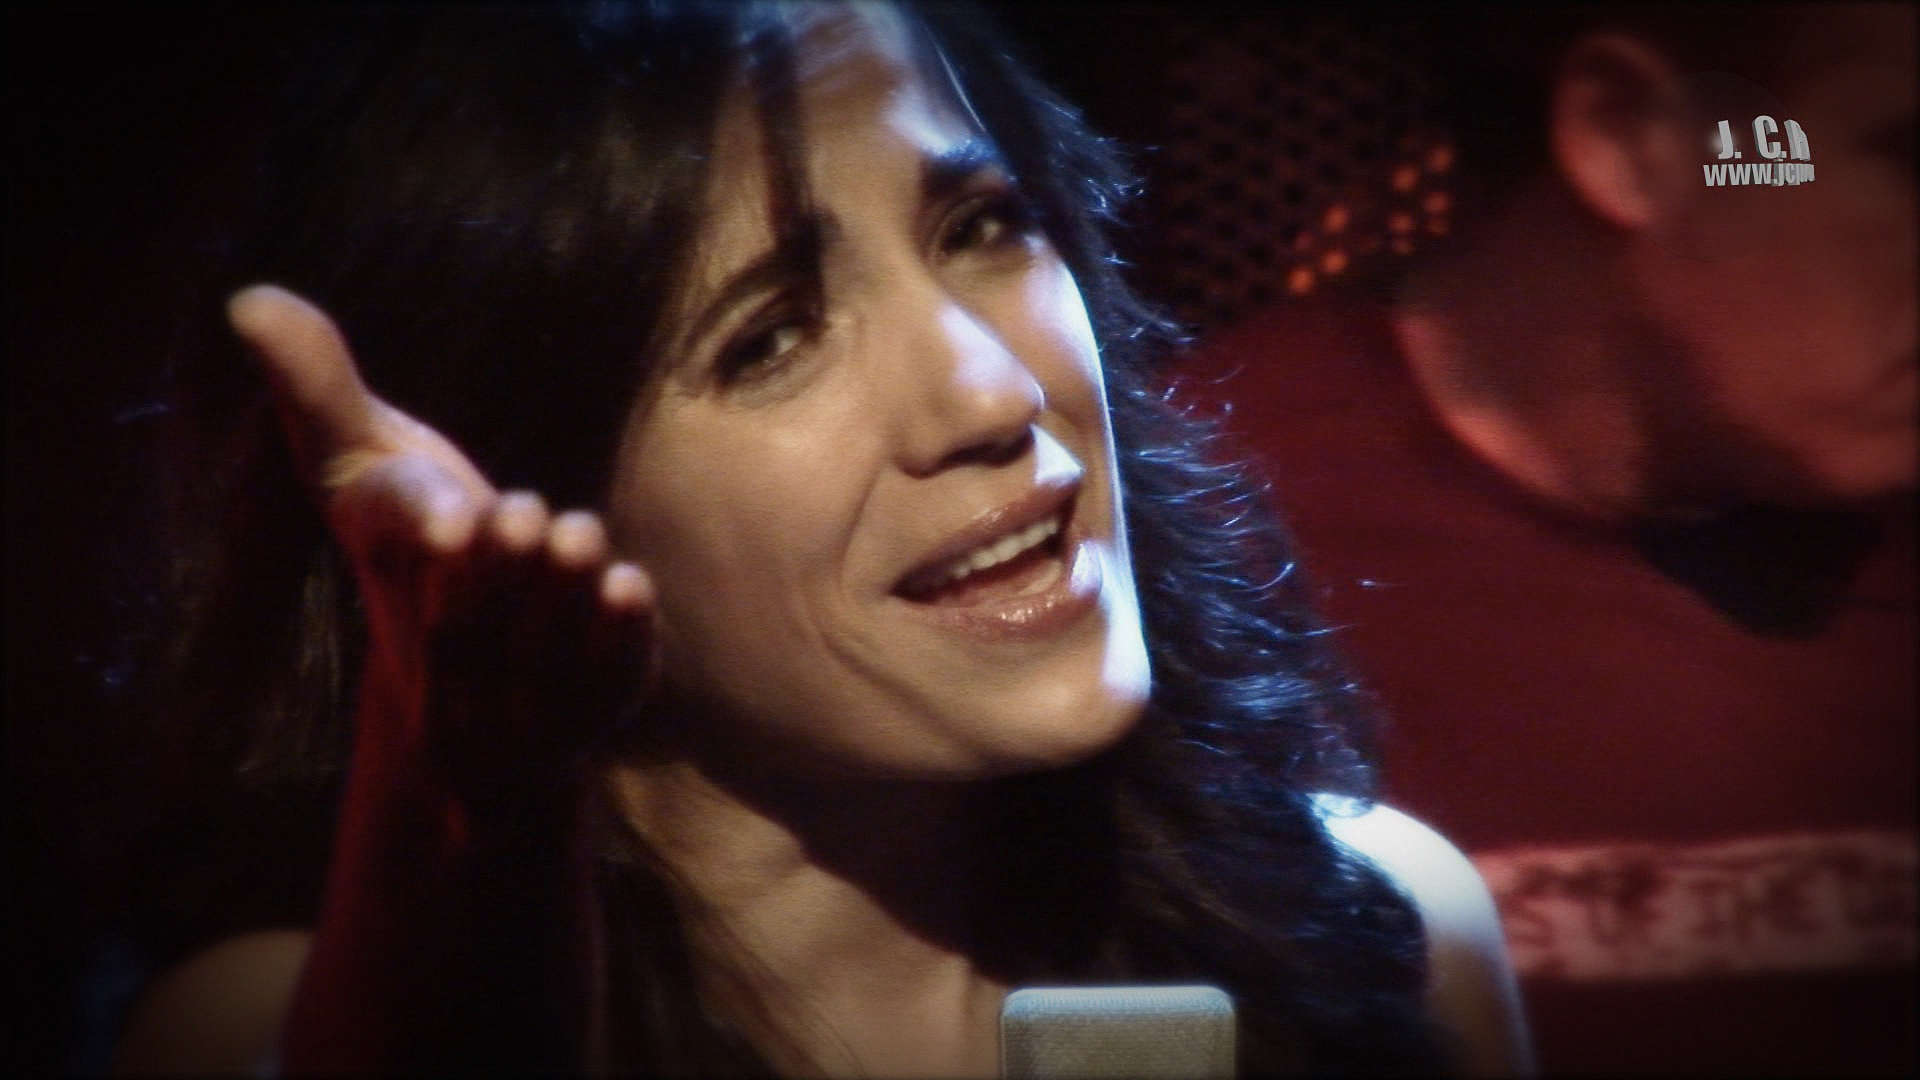 Videoclip de Yolanda Rodríguez interpretando la canción "Déjate querer" compuesta y producida por Julio Caminero en M.S.A Mataró.